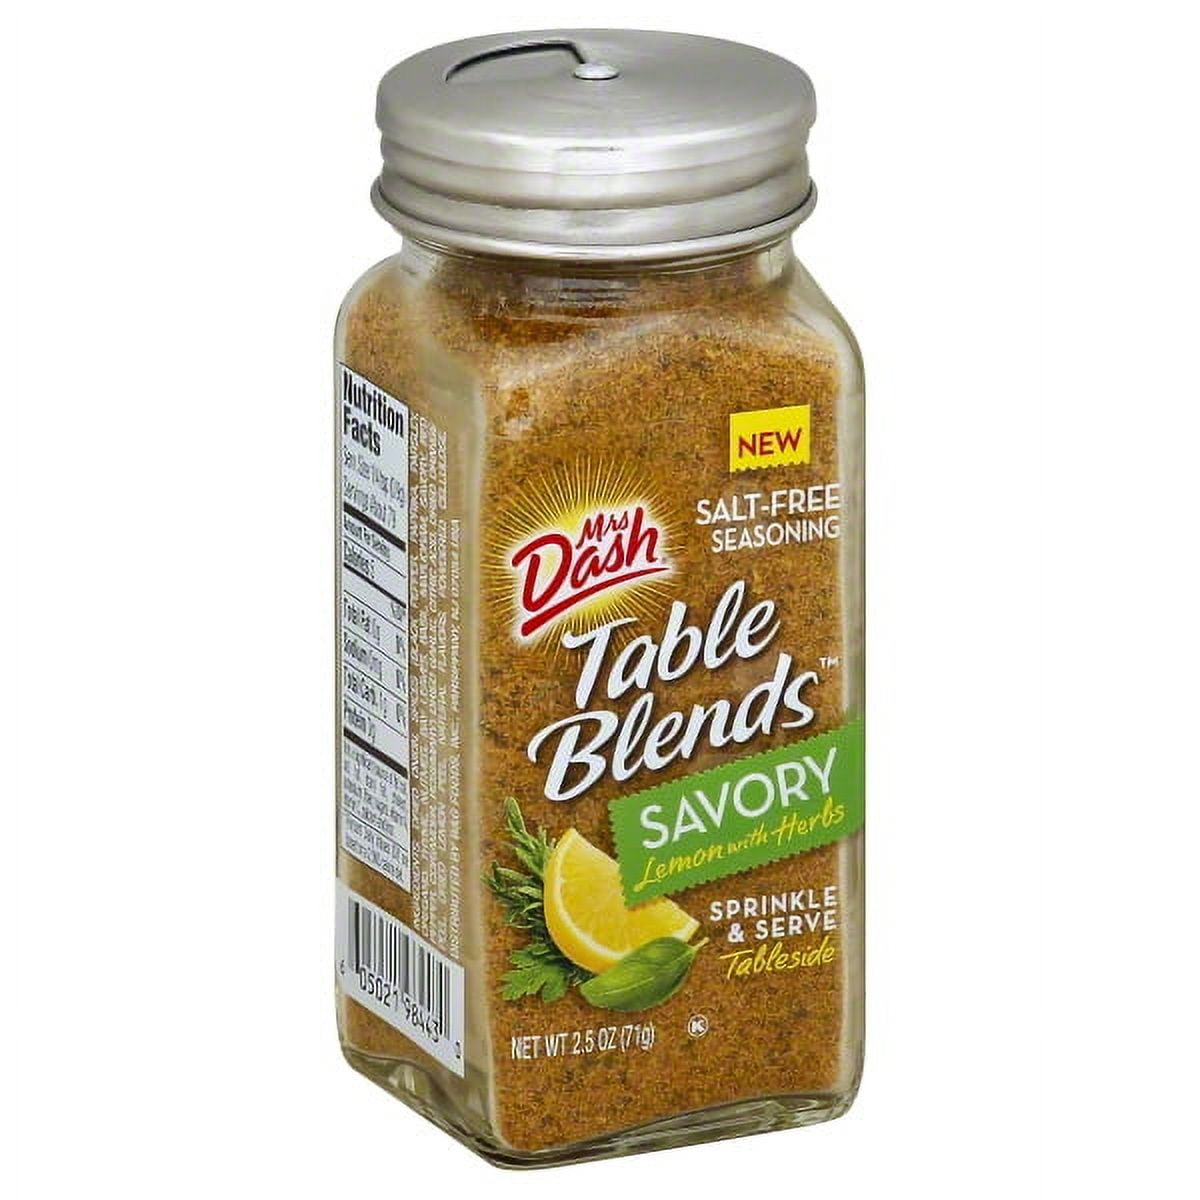 Mrs.Dash Original Blend Seasoning - 6.75 oz. Jar, 6 per Case